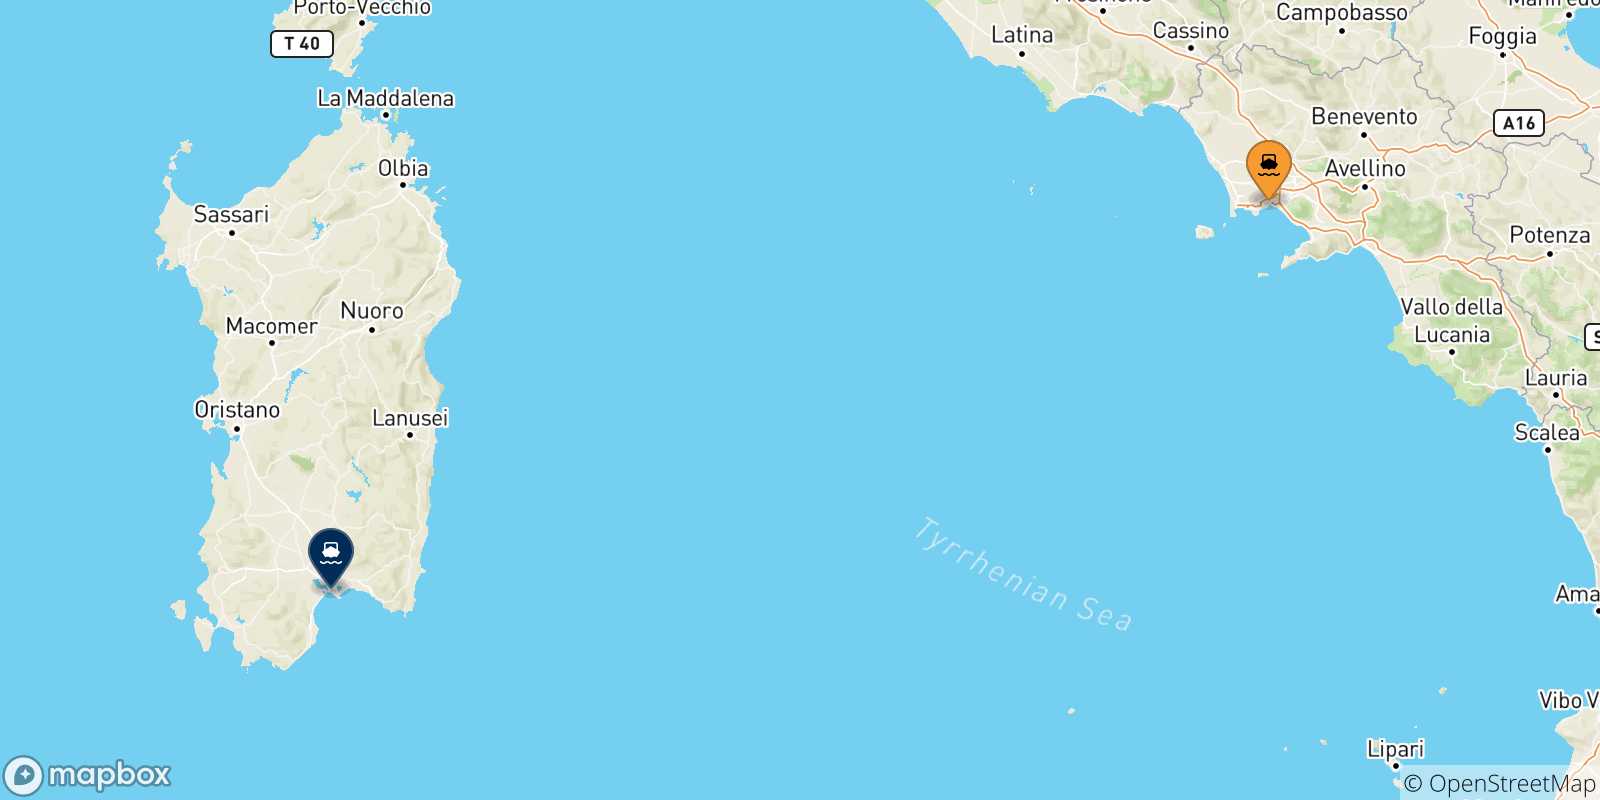 Mappa delle possibili rotte tra Napoli e la Sardegna